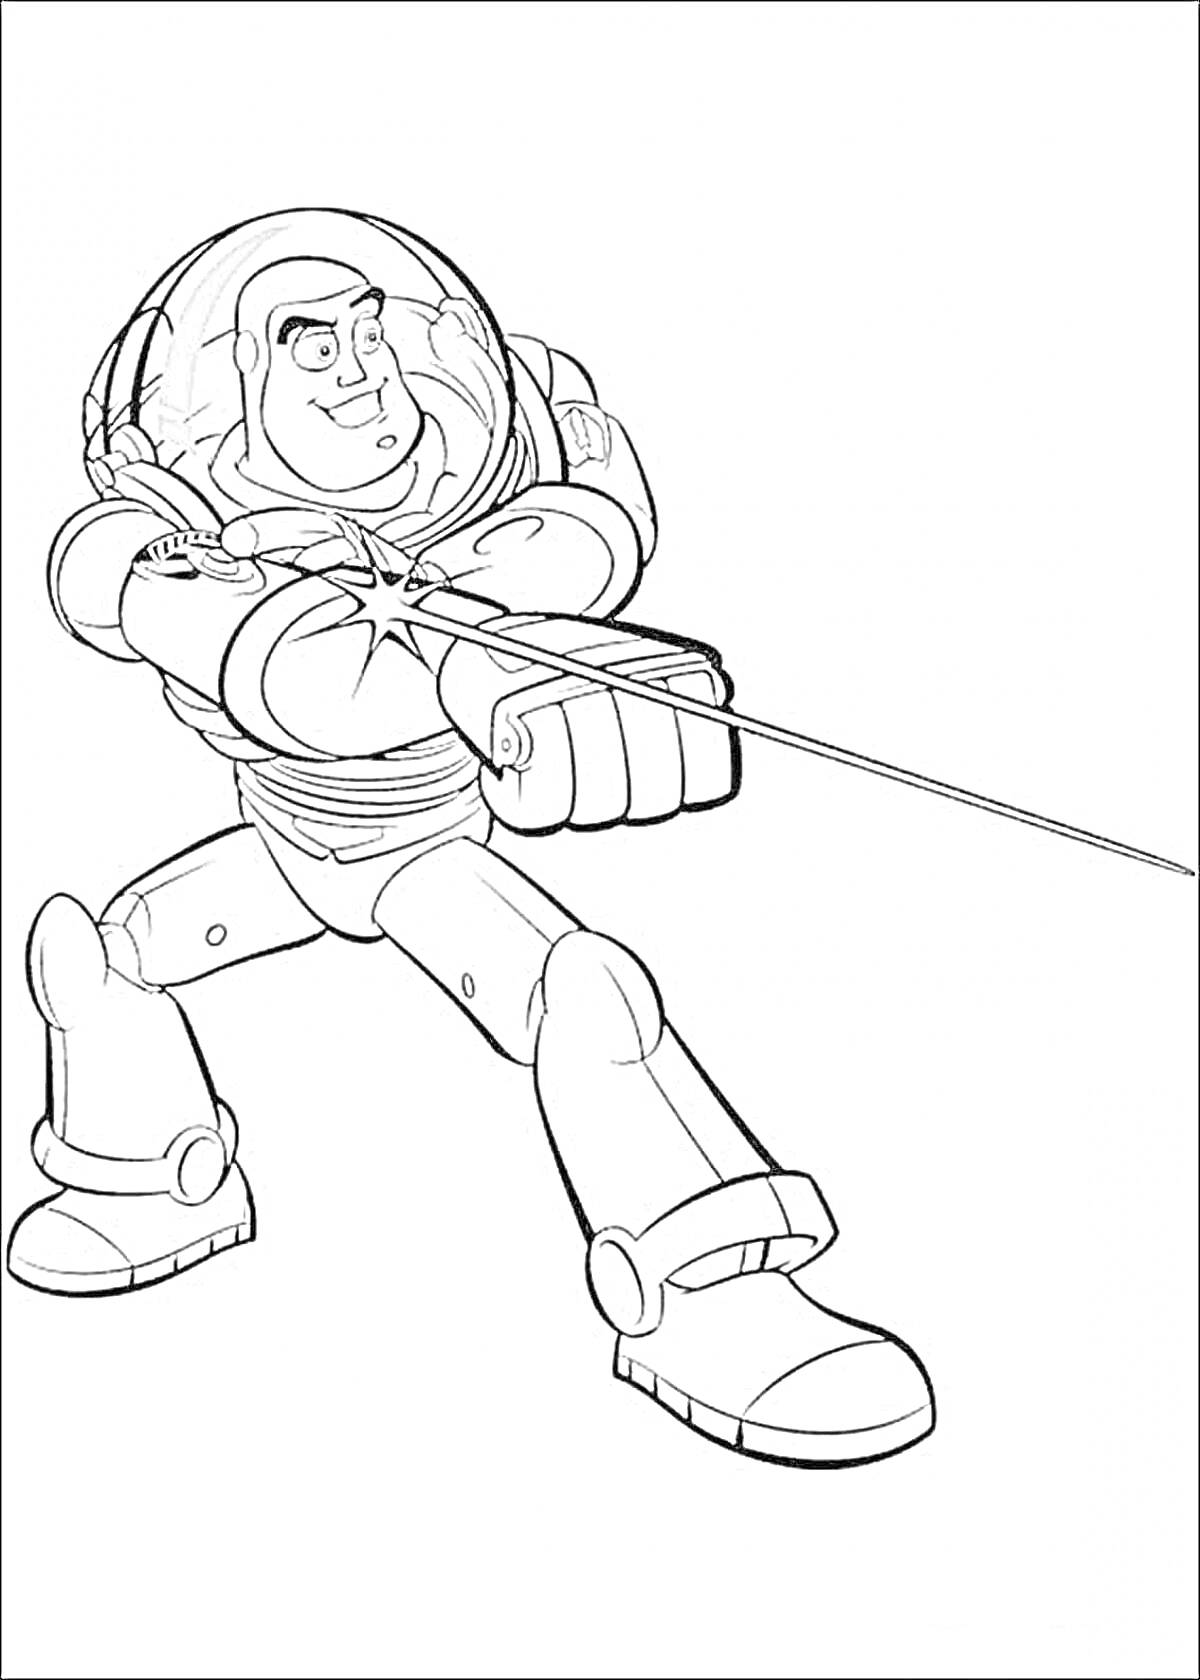 Раскраска Космический рейнджер в боевой стойке (раскраска персонажа в скафандре с вытянутой рукой и нитью)